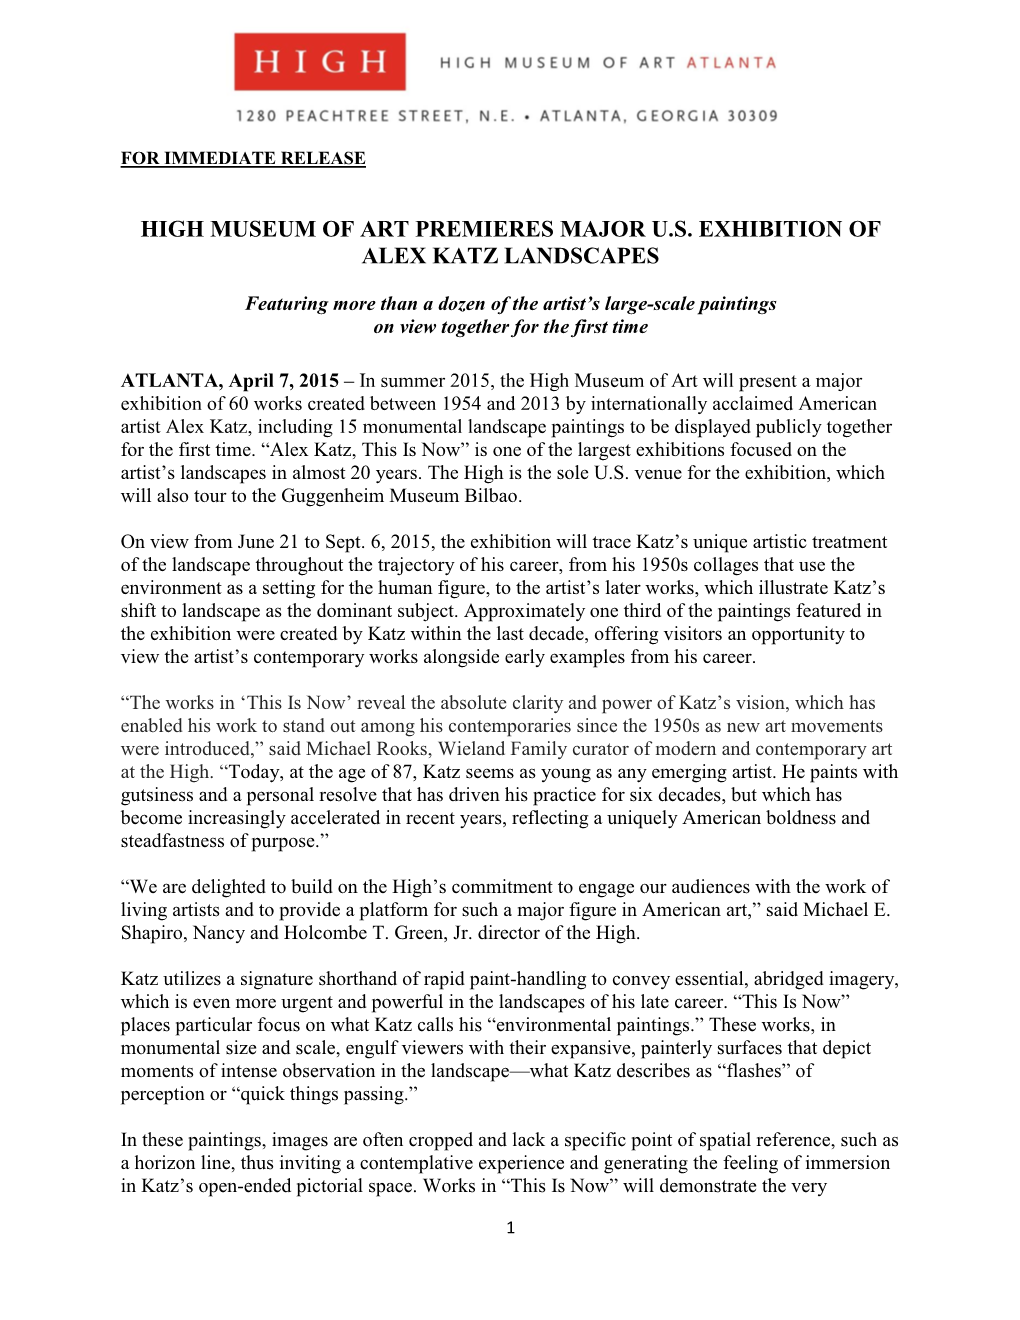 High Museum of Art Premieres Major U.S. Exhibition of Alex Katz Landscapes